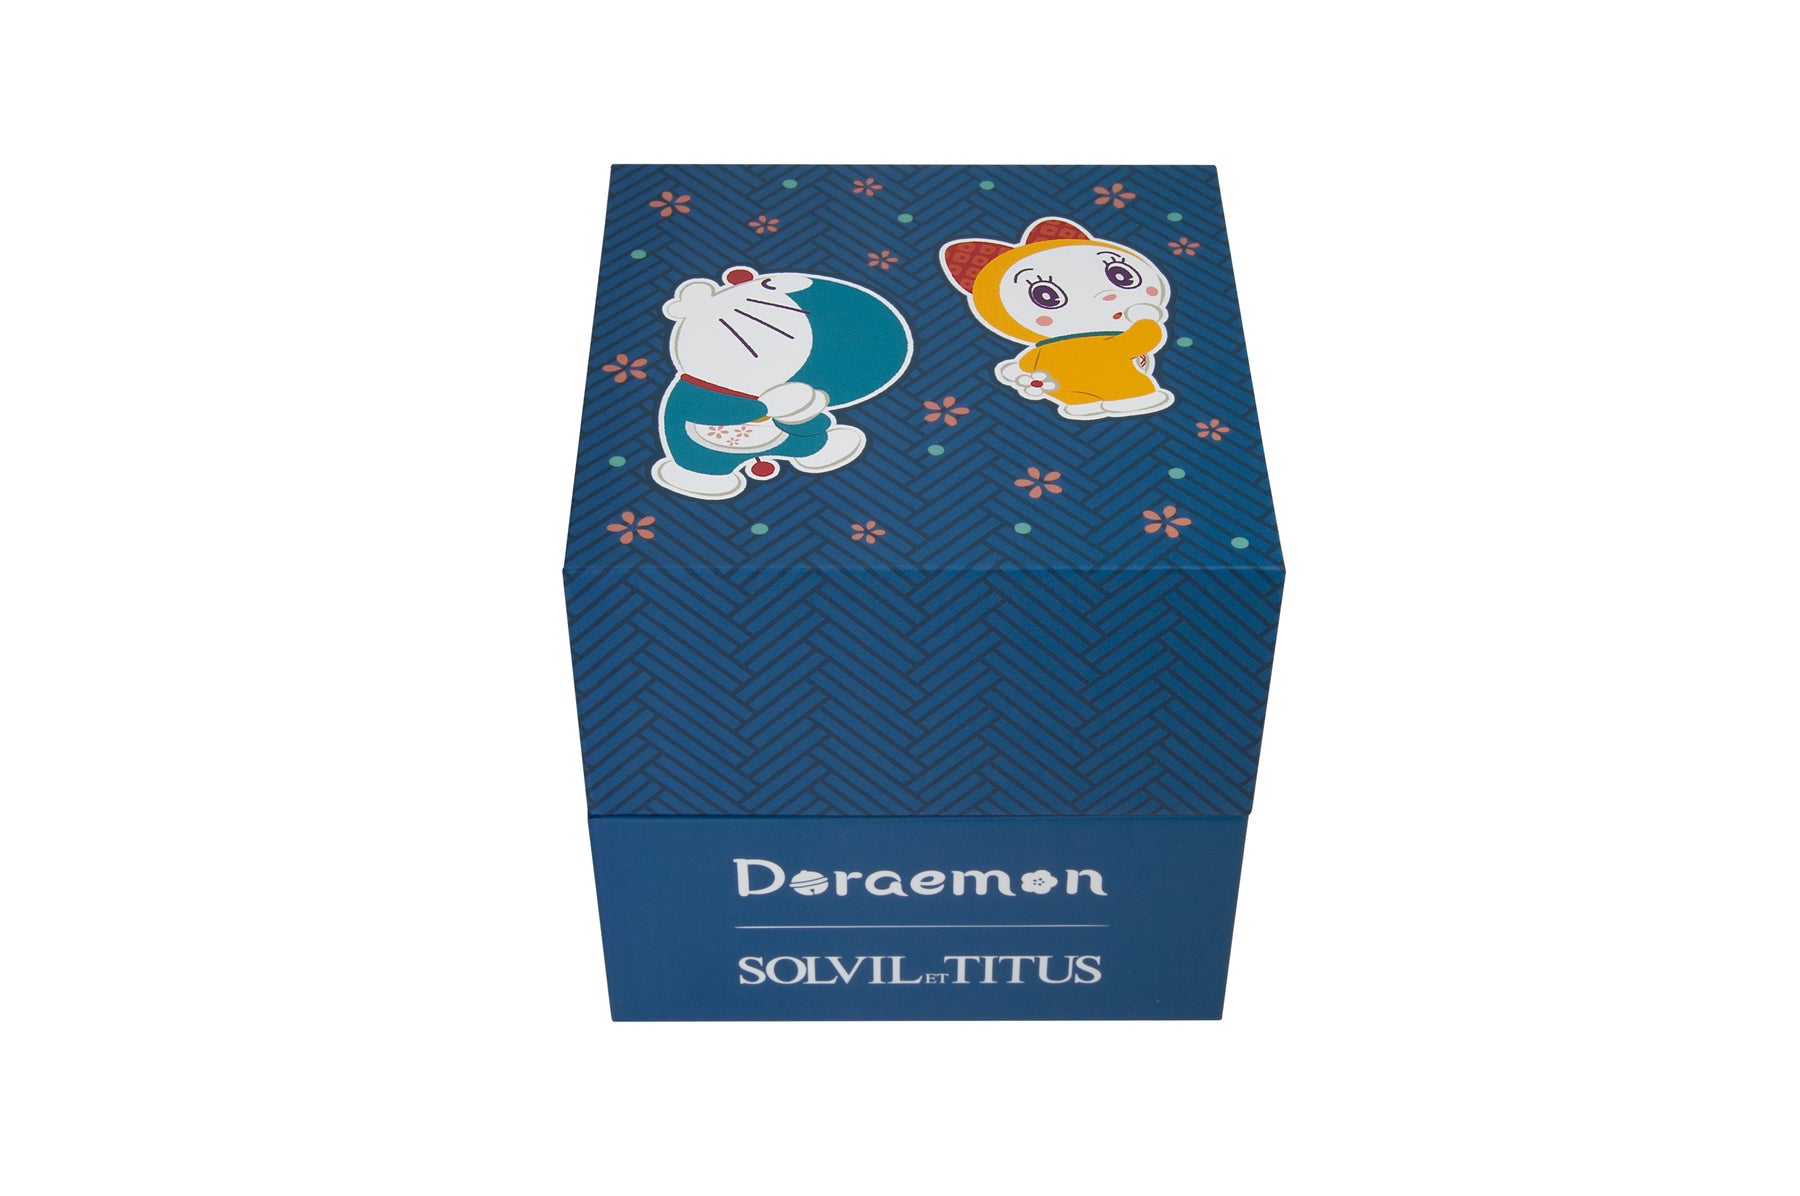 Solvil et Titus x Doraemon Limited Edition Multi-Function Quartz Stainless Steel Women Watch W06-03317-001